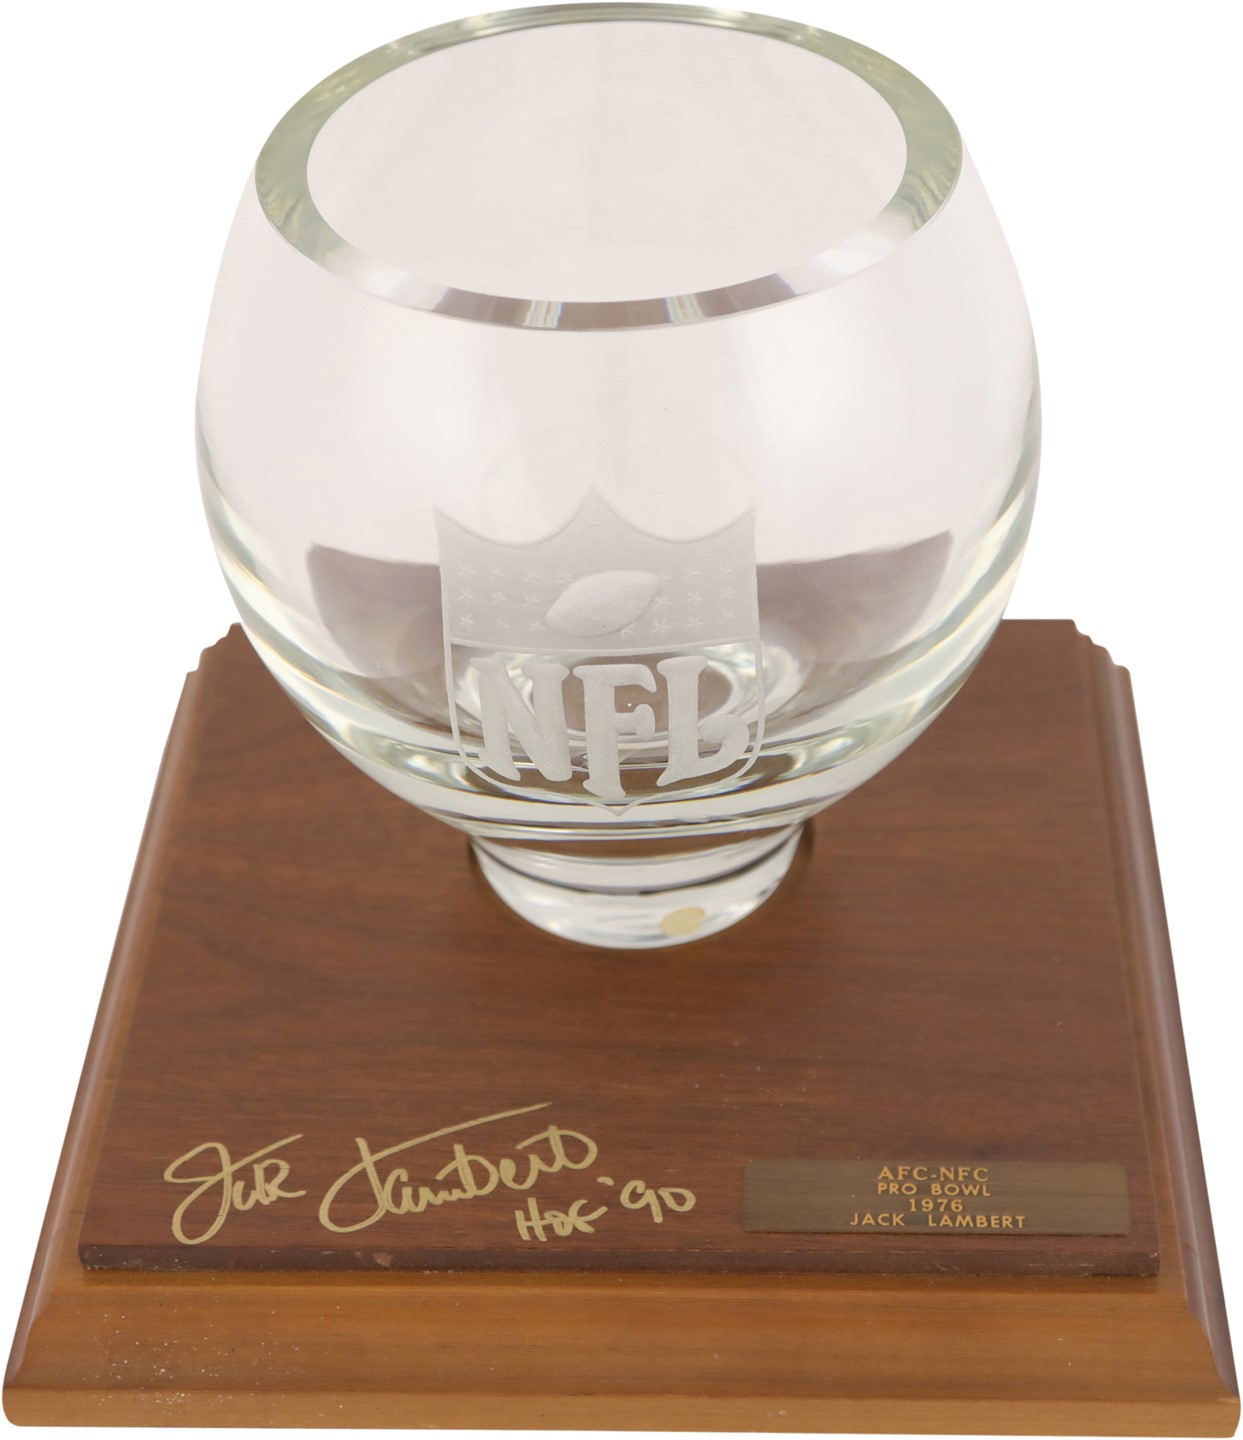 The Jack Lambert Collection - 1976 Jack Lambert Pro Bowl Award